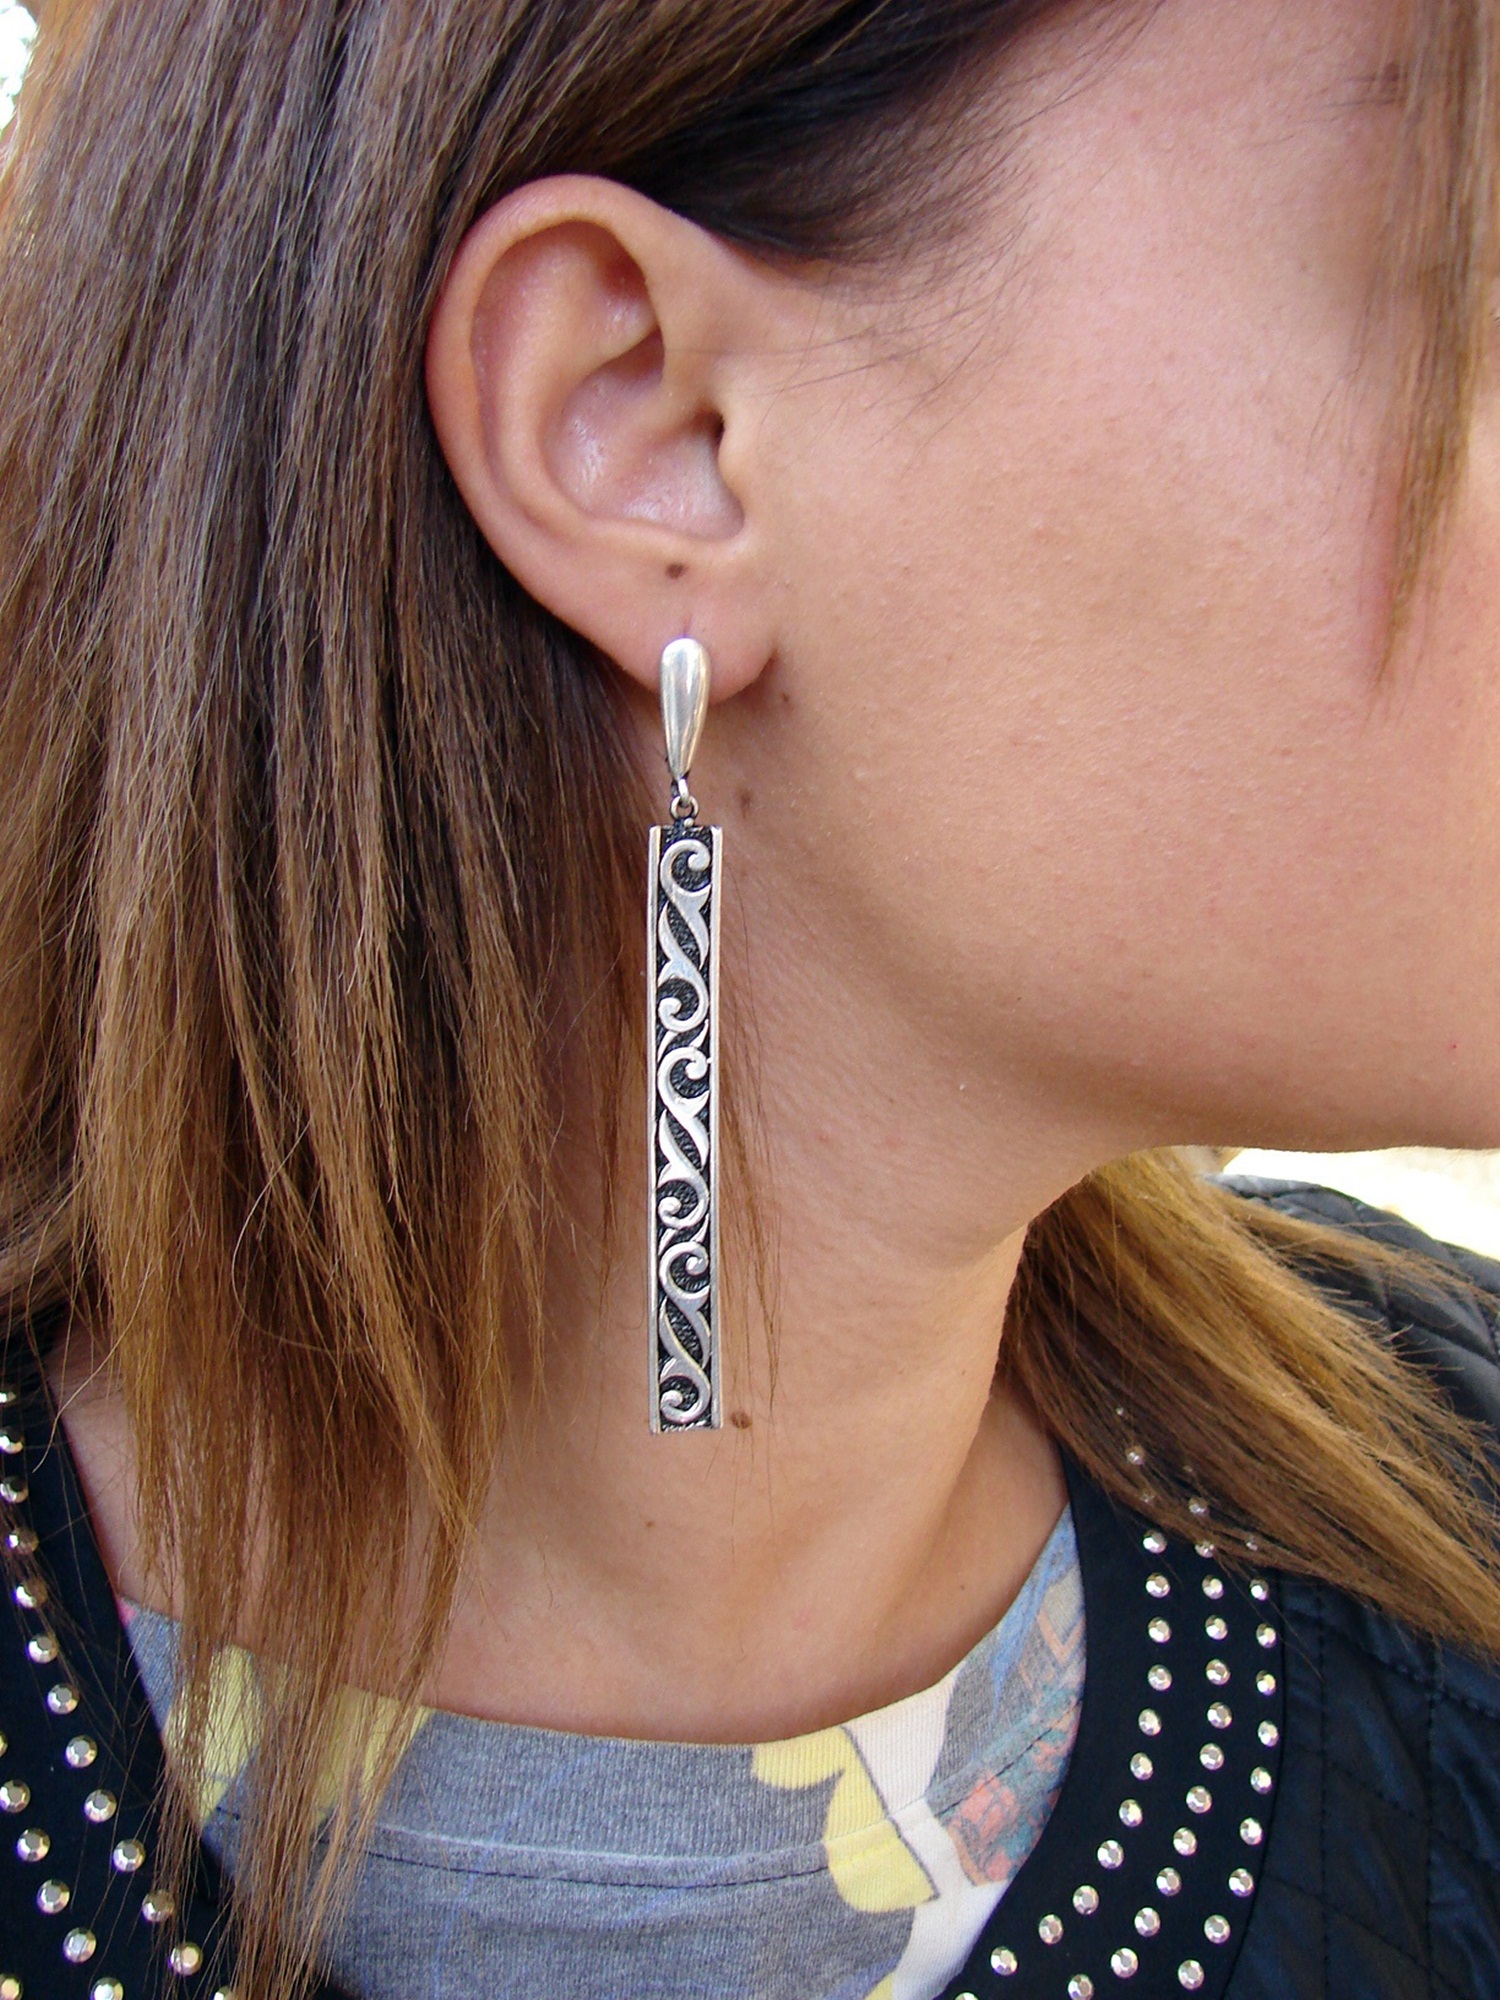 Long Earrings Sterling Silver 925, Ethnic Style, Party Earrings